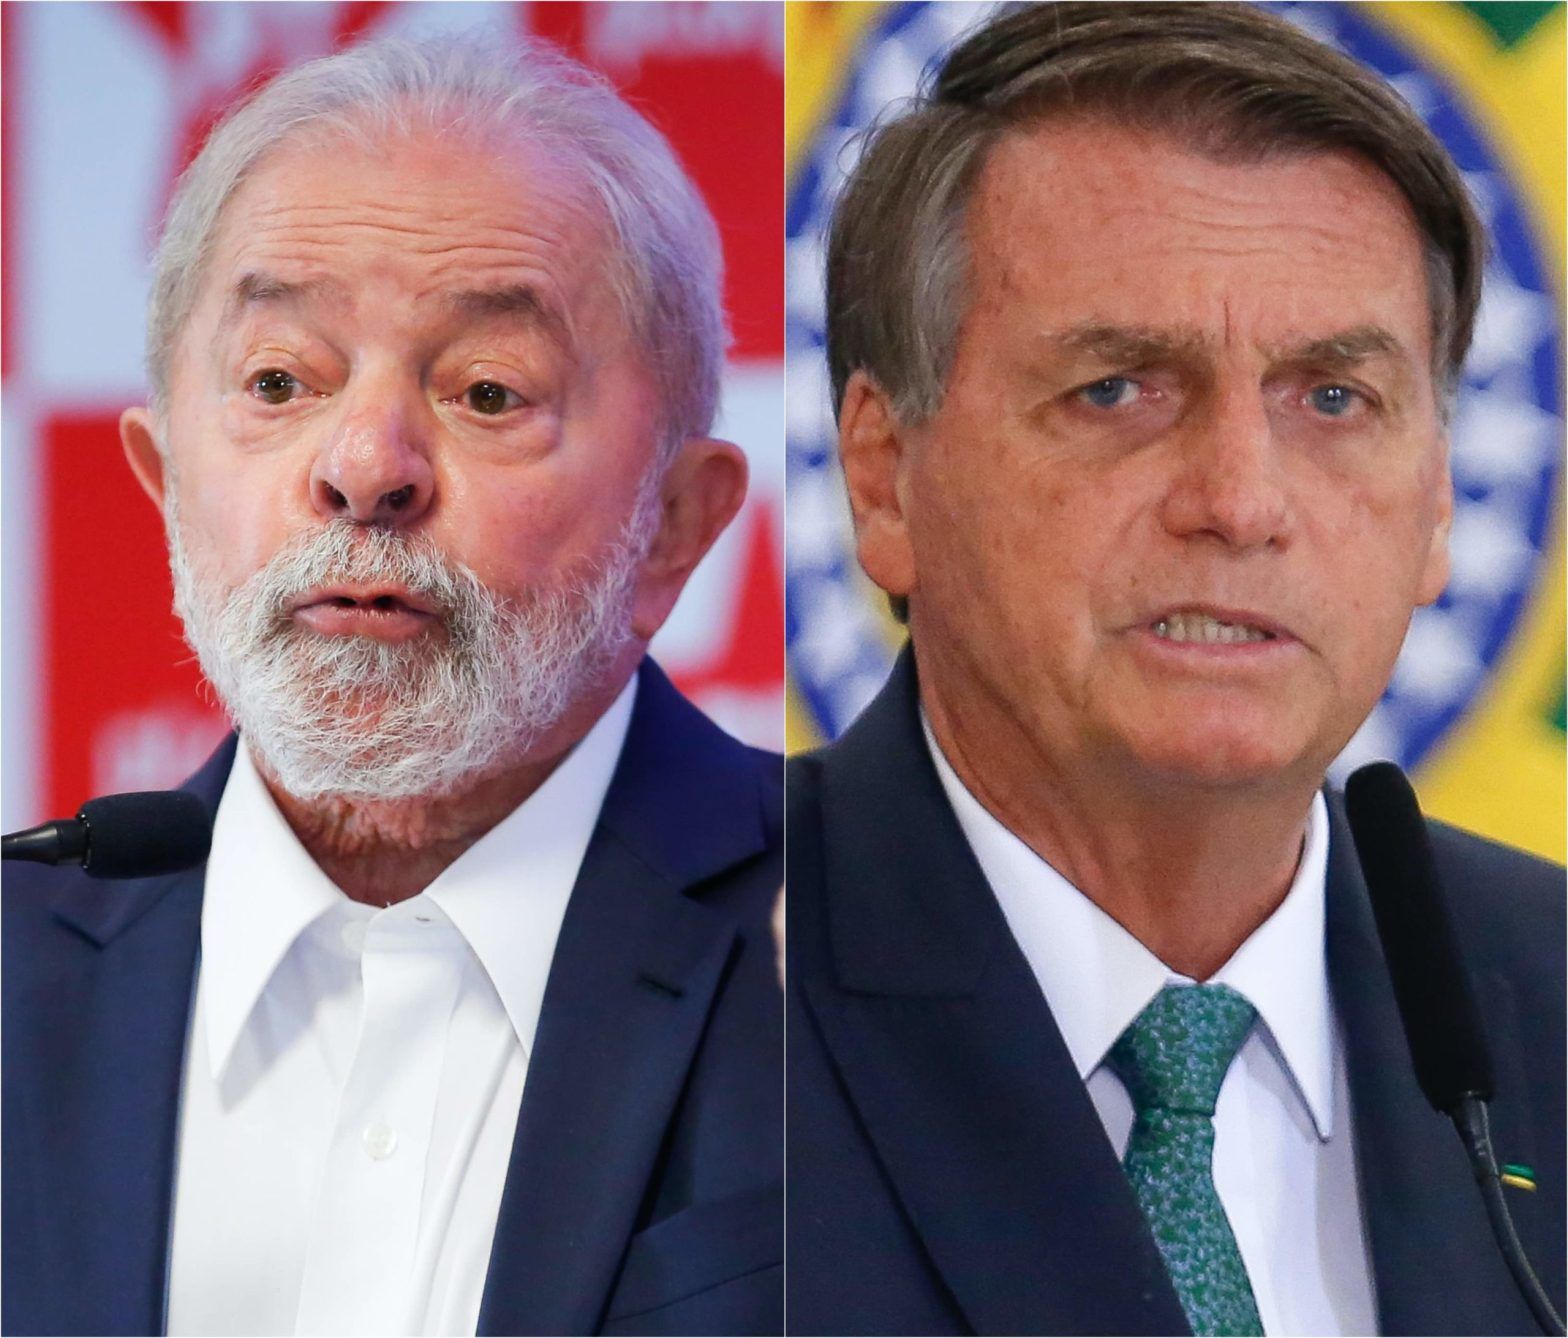 Βραζιλία: Με διψήφια διαφορά προηγείται ο Λούλα ντα Σίλβα του προέδρου Μπολσονάρου